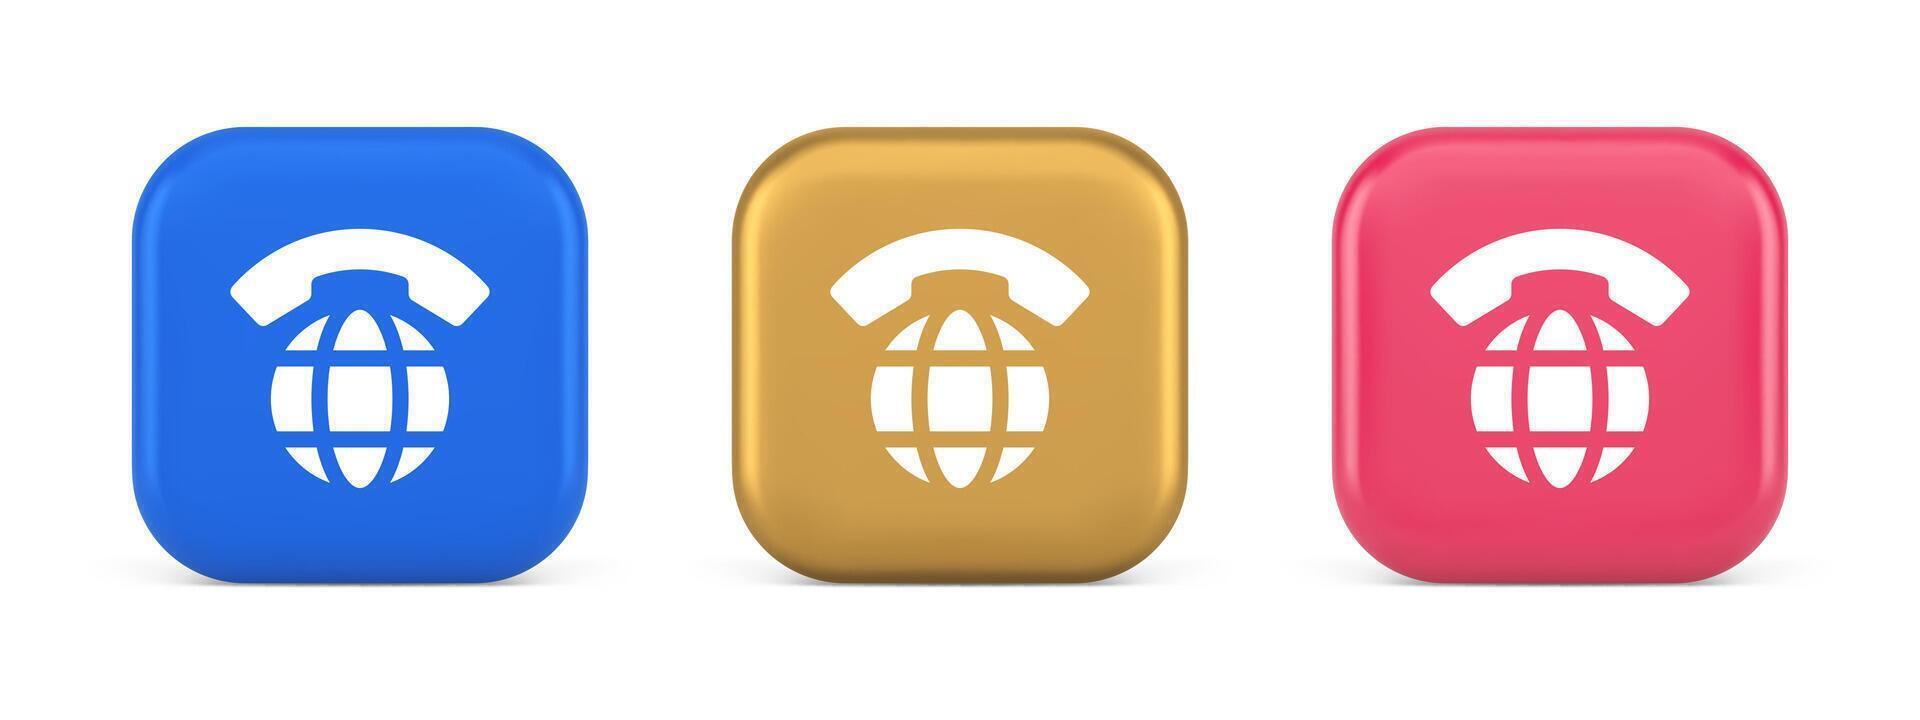 global telefone comunicação botão Internet Telefone conexão 3d realista ícone vetor